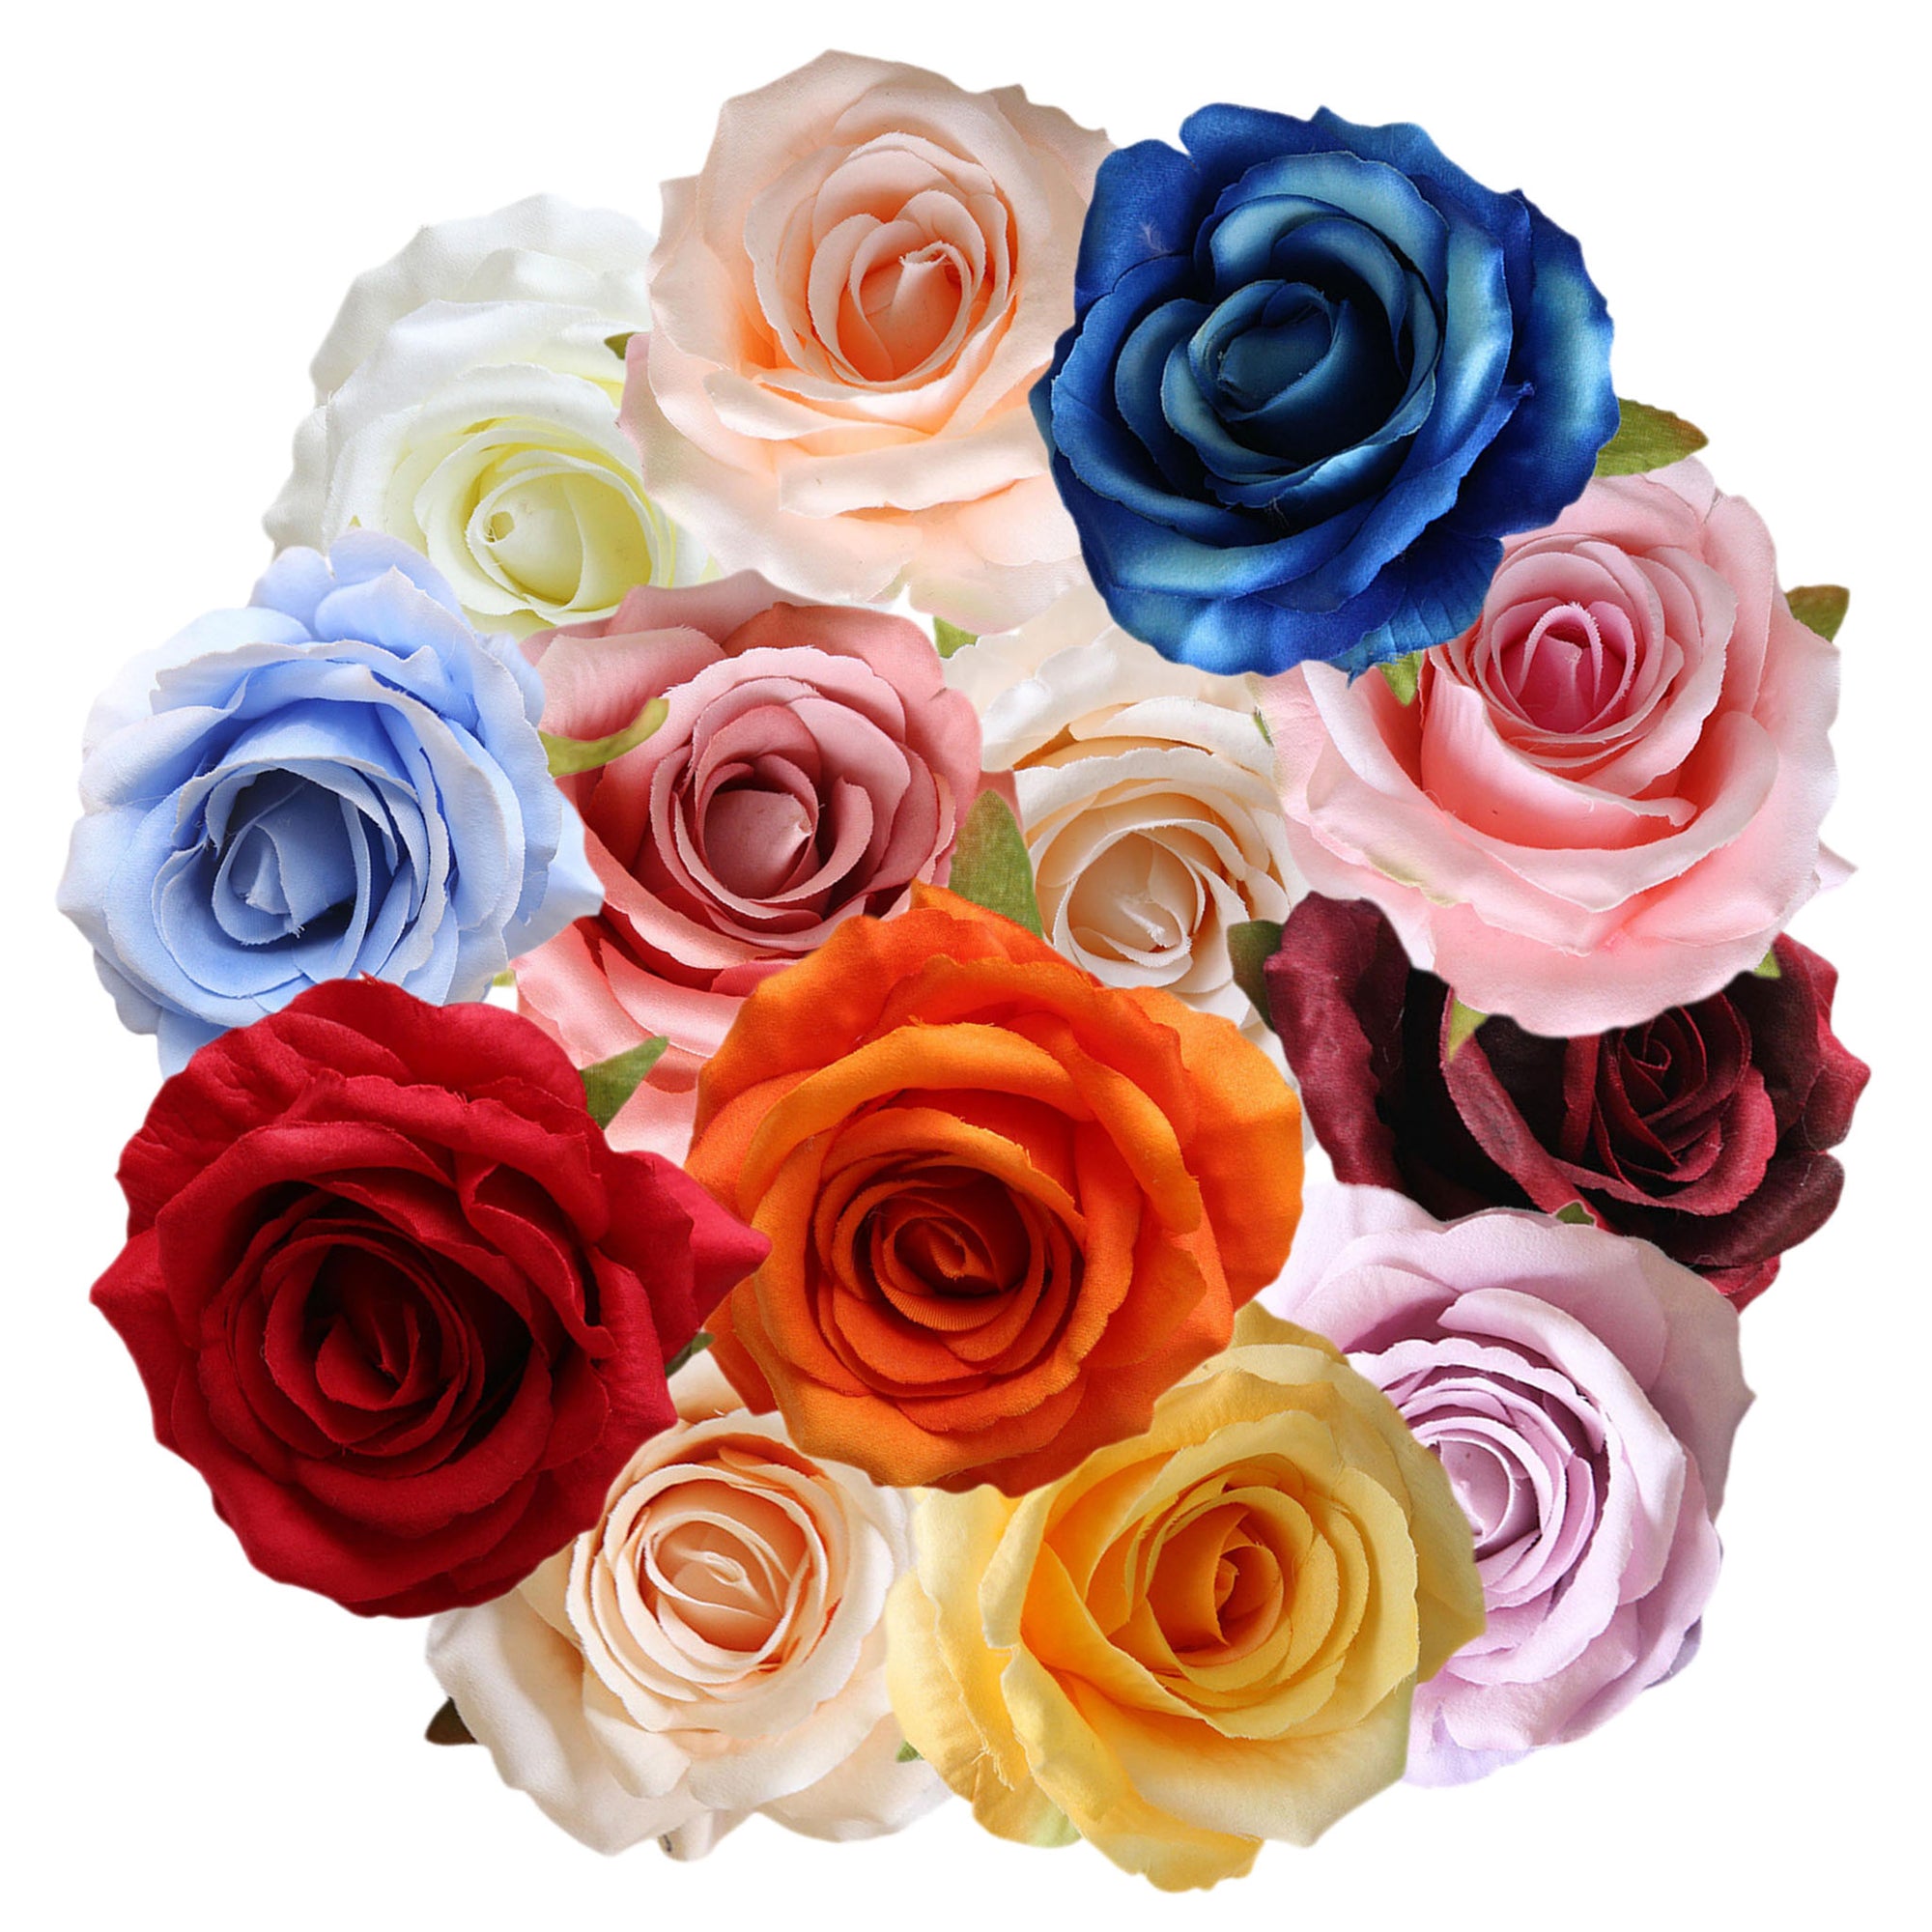 Quality Artificial Flower Heads Velvet Roses